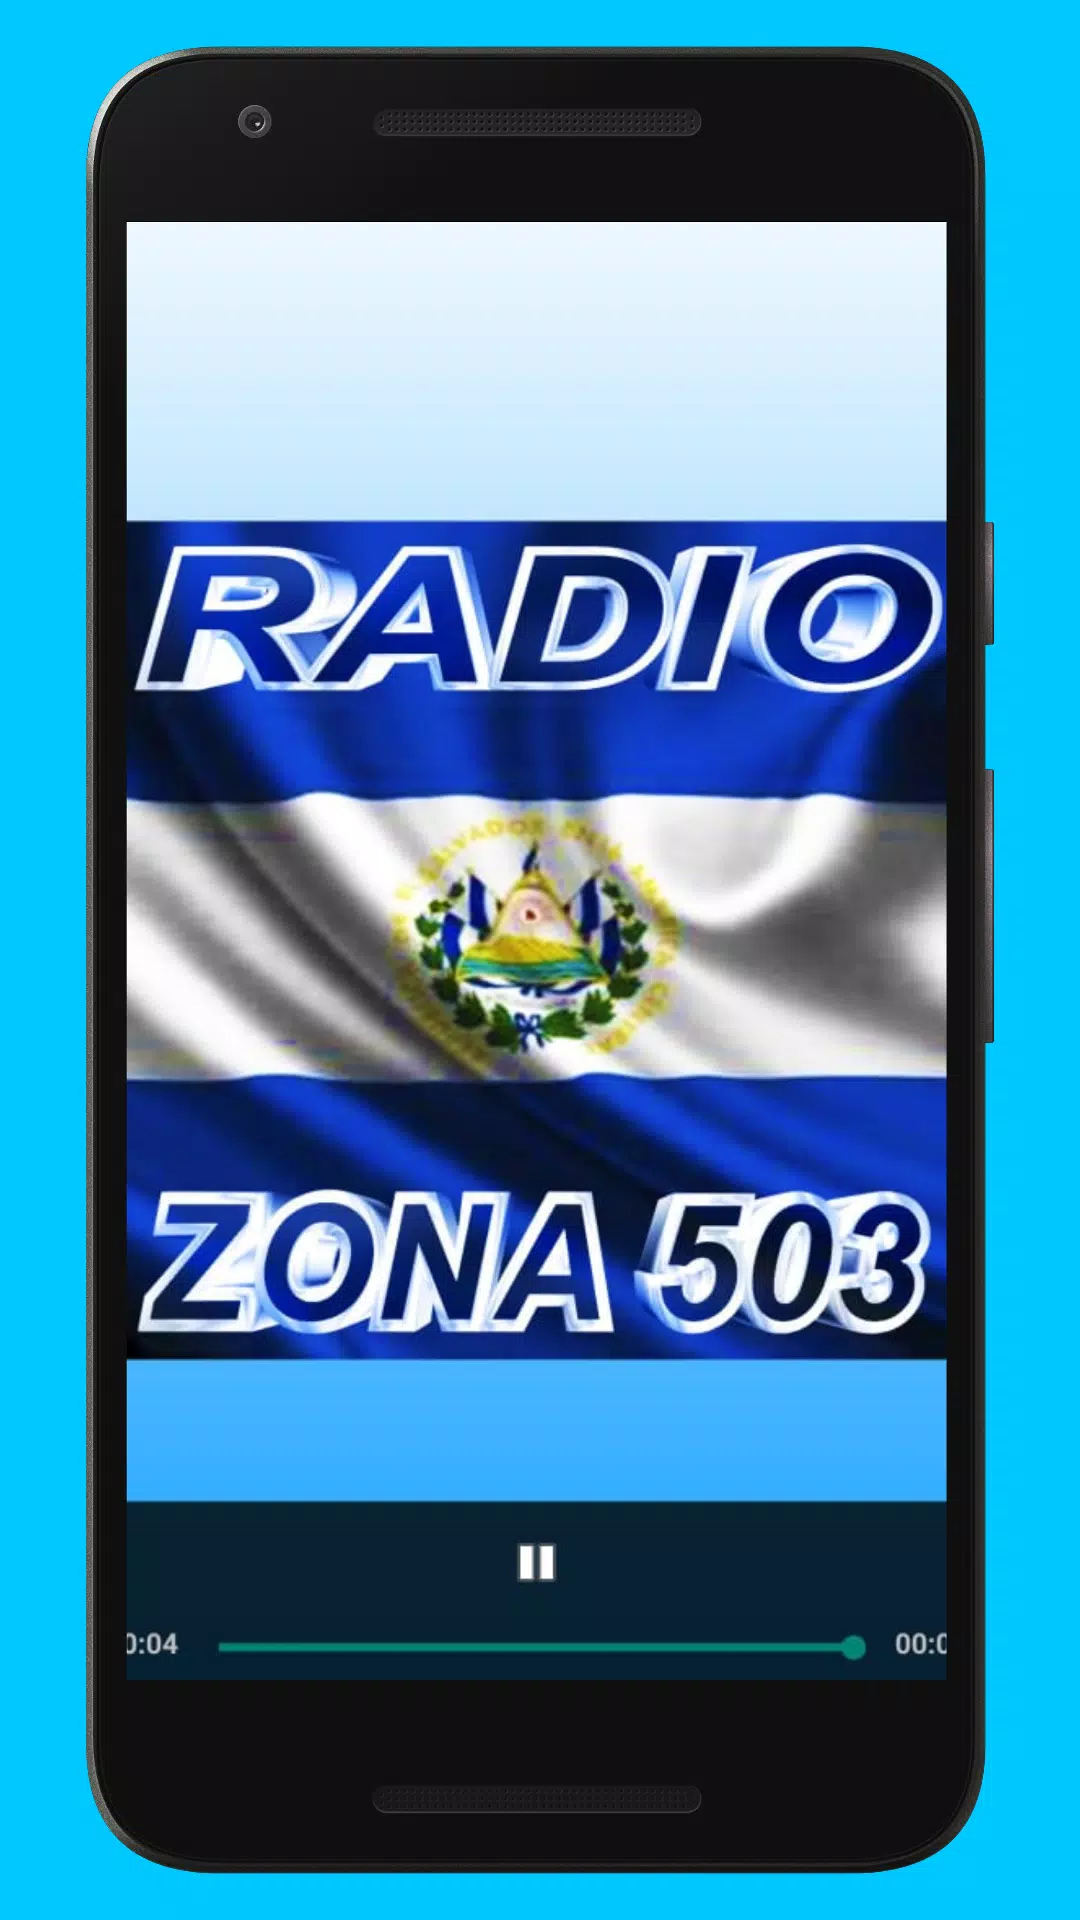 Radio de EL Salvador: Zone 503 APK for Android Download